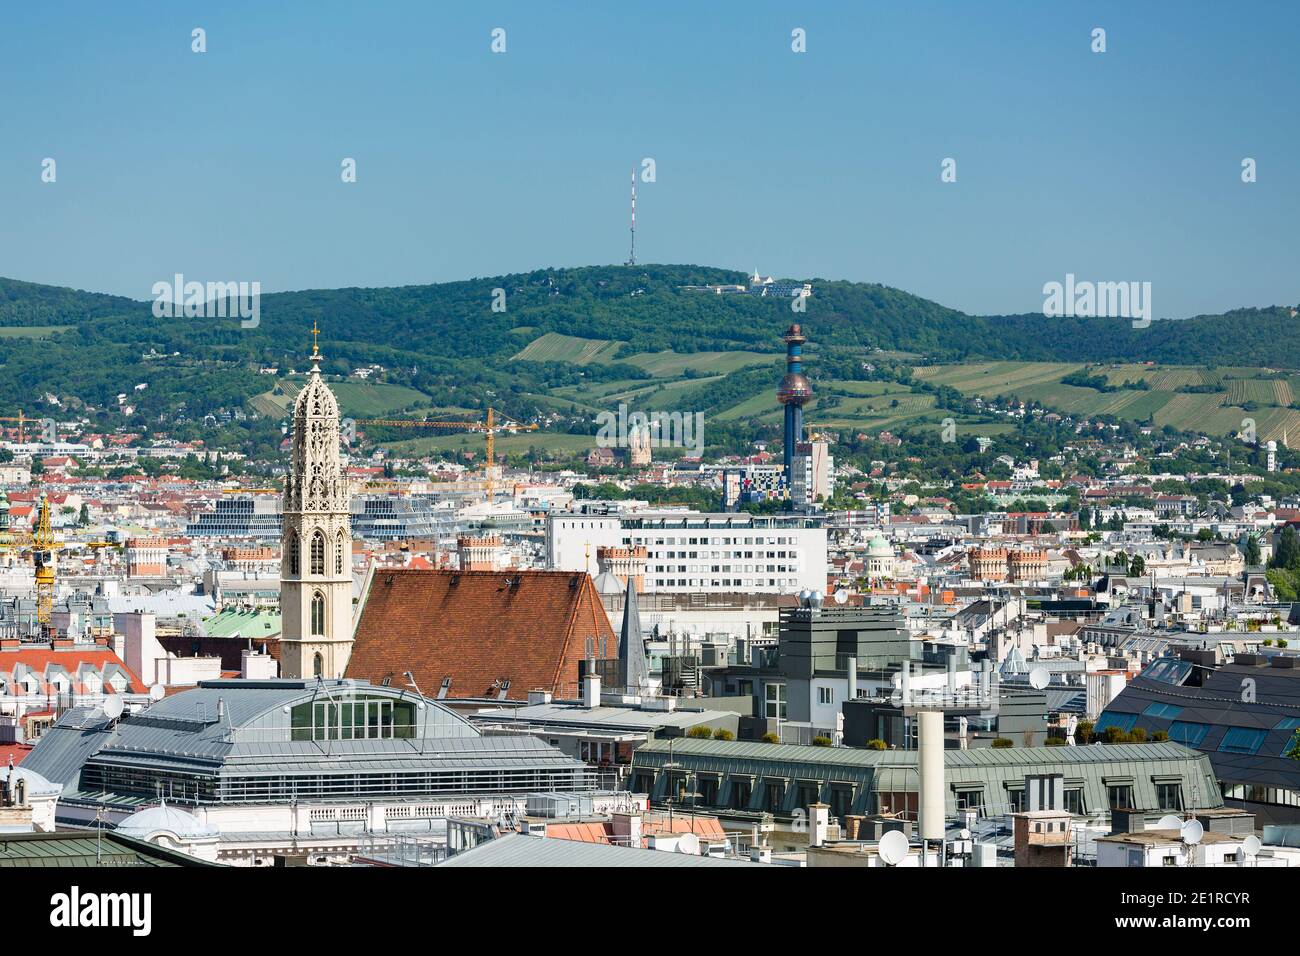 Vue depuis une tour d'église sur le centre-ville de Vienne avec la tour de l'usine d'incinération des déchets Spittelau et le Kahlenberg en arrière-plan, Banque D'Images